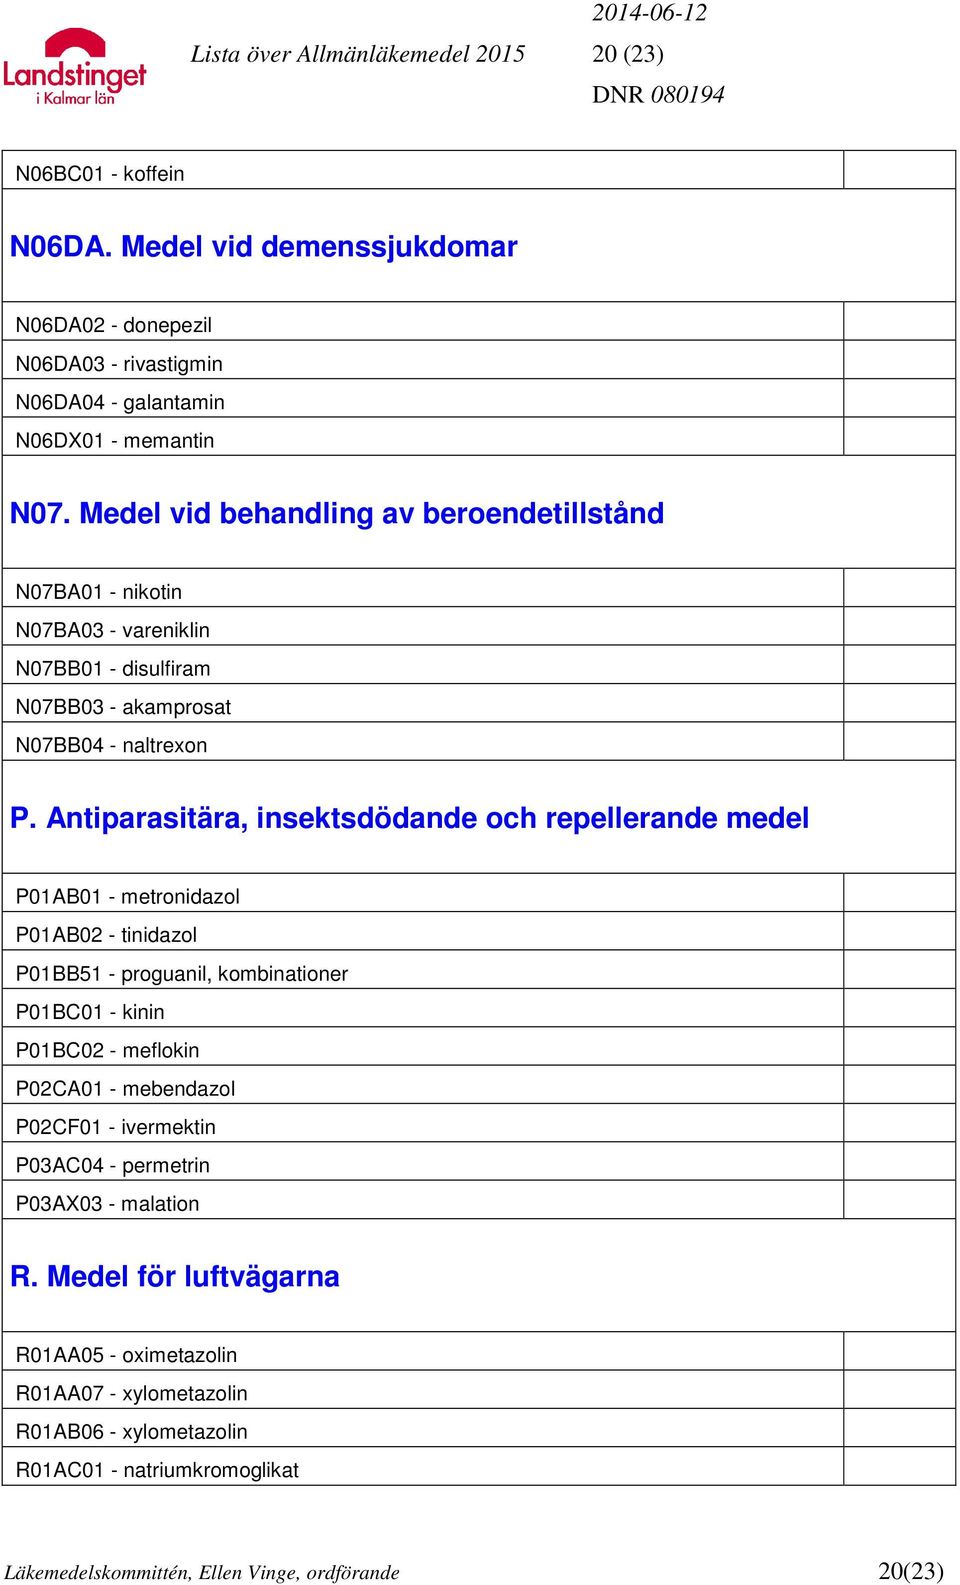 Antiparasitära, insektsdödande och repellerande medel P01AB01 - metronidazol P01AB02 - tinidazol P01BB51 - proguanil, kombinationer P01BC01 - kinin P01BC02 - meflokin P02CA01 -